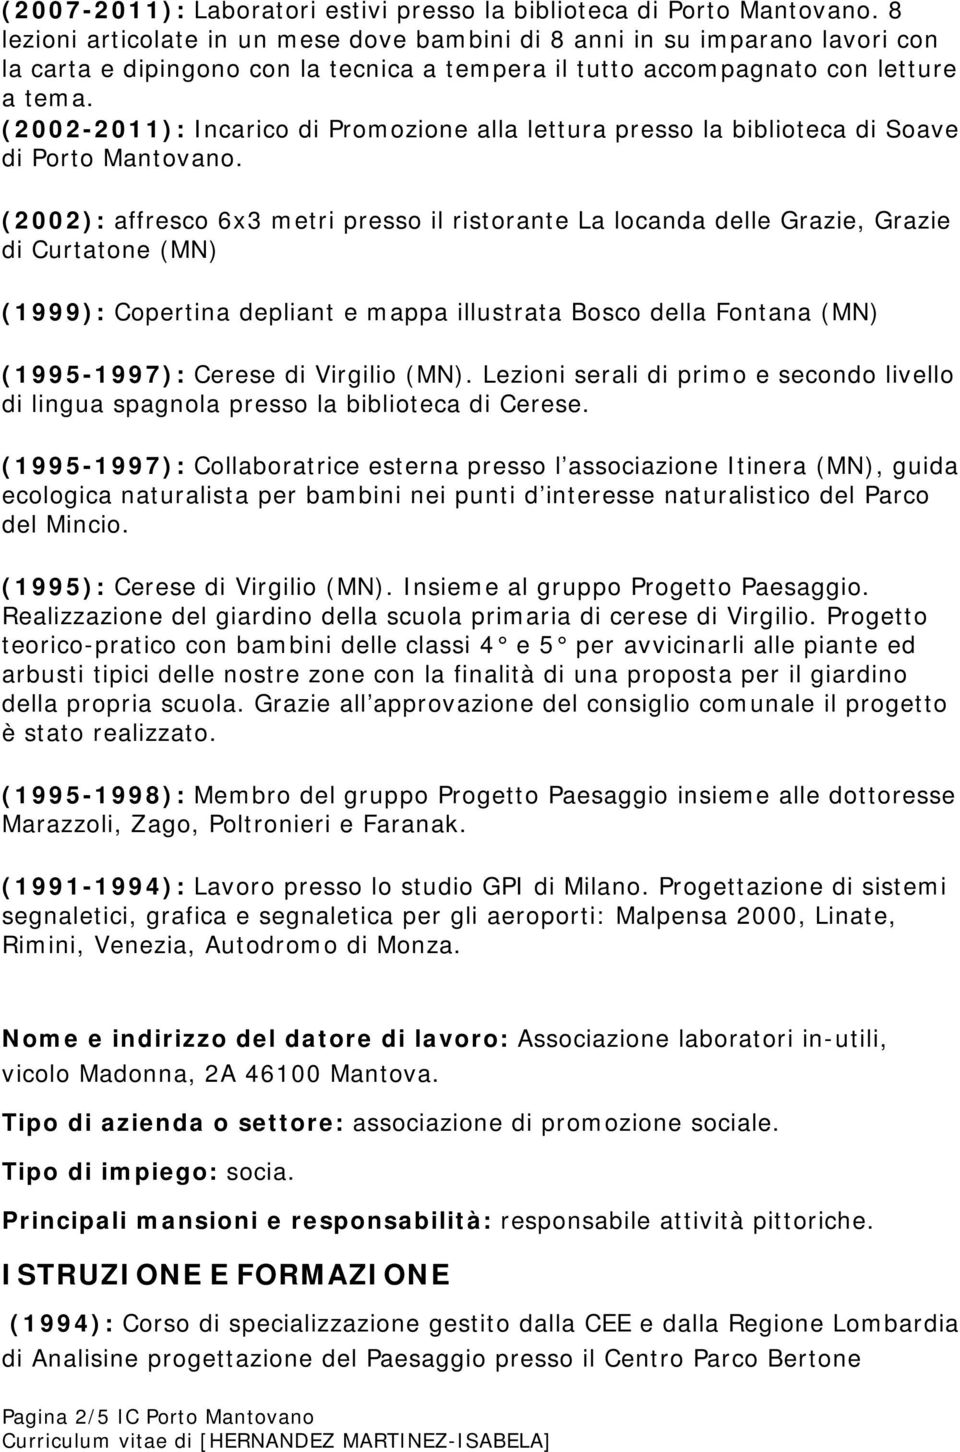 (2002-2011): Incarico di Promozione alla lettura presso la biblioteca di Soave di Porto Mantovano.